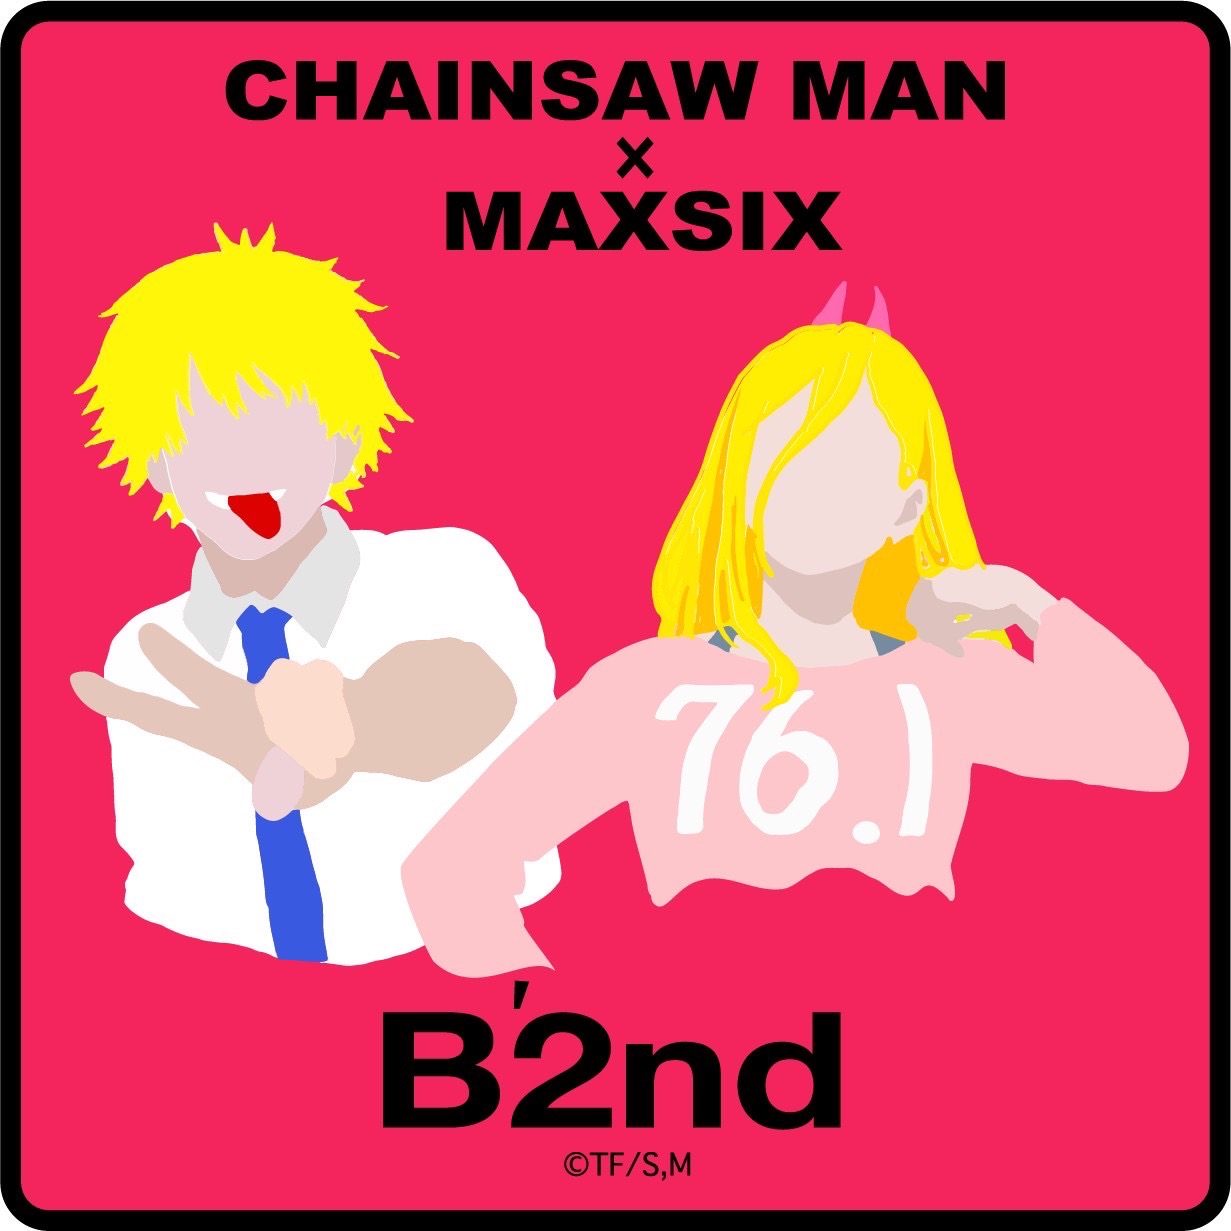 セレクトショップ「B'2 nd」がチェンソーマンとMAXSIXのコラボTシャツ